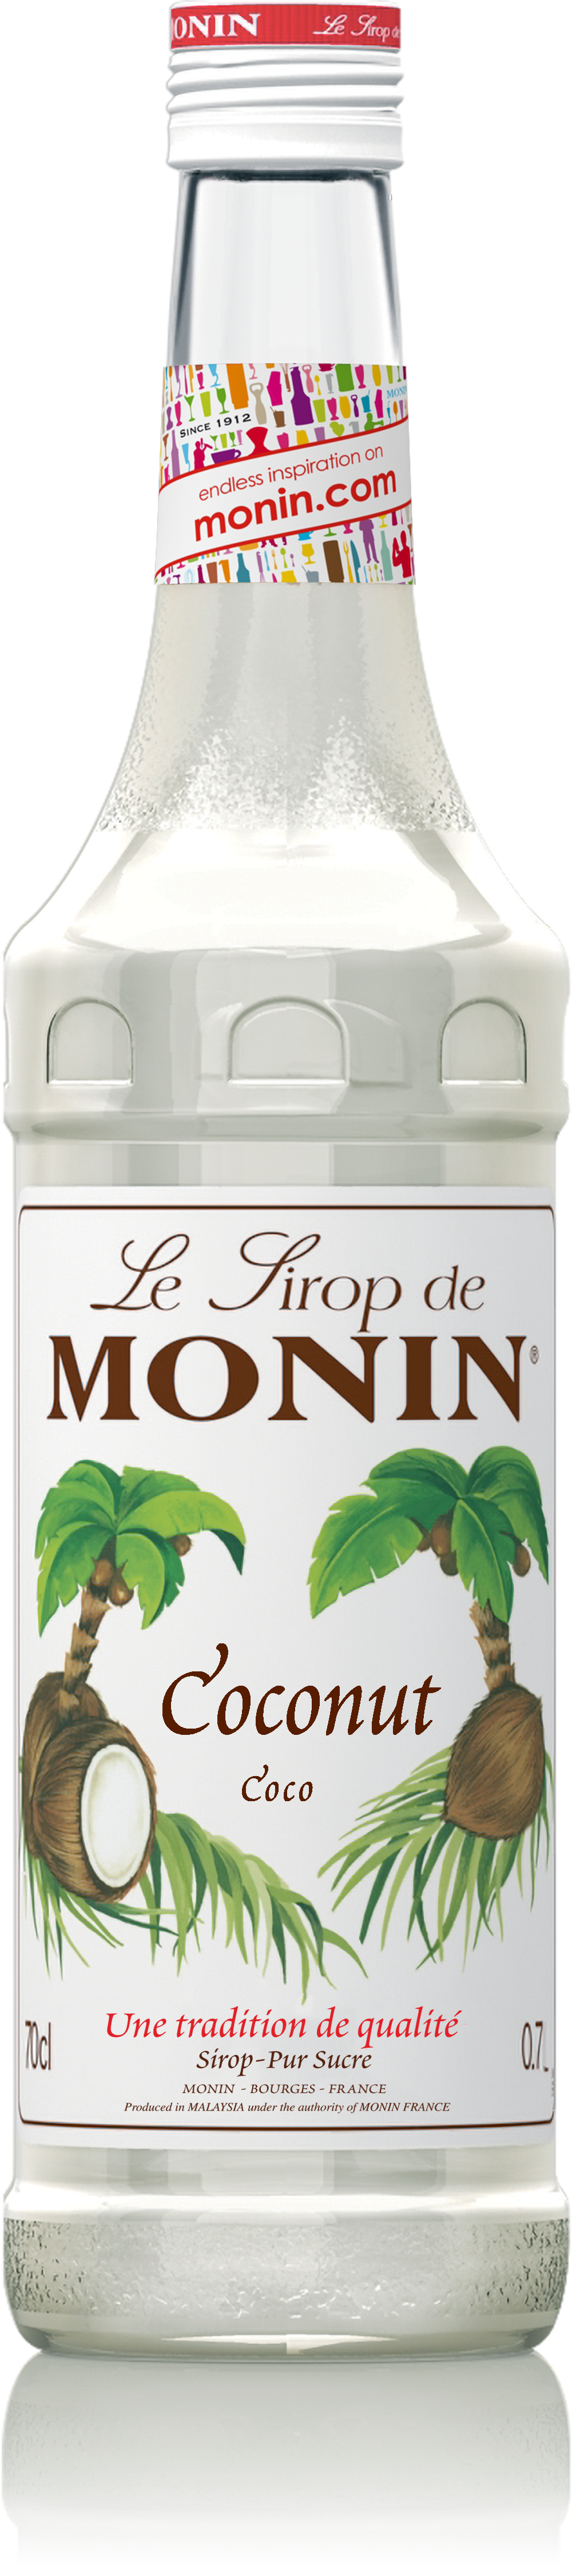 Les sirops Monin : l'art d'accommoder cocktails et cafés ! - La